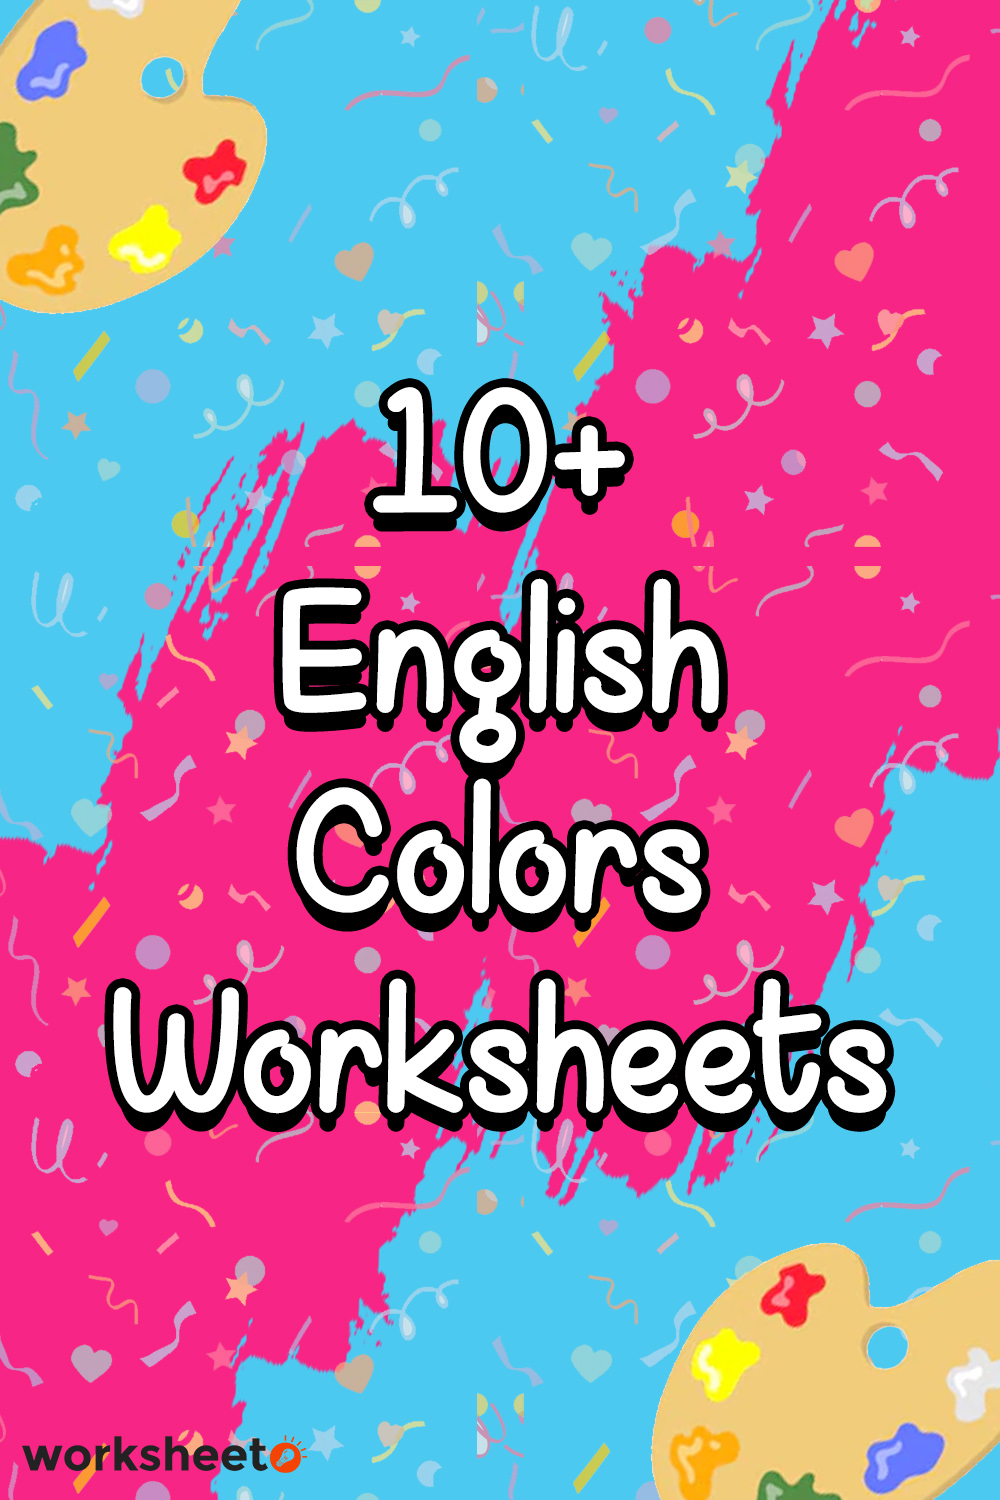 13 English Colors Worksheet Free PDF At Worksheeto